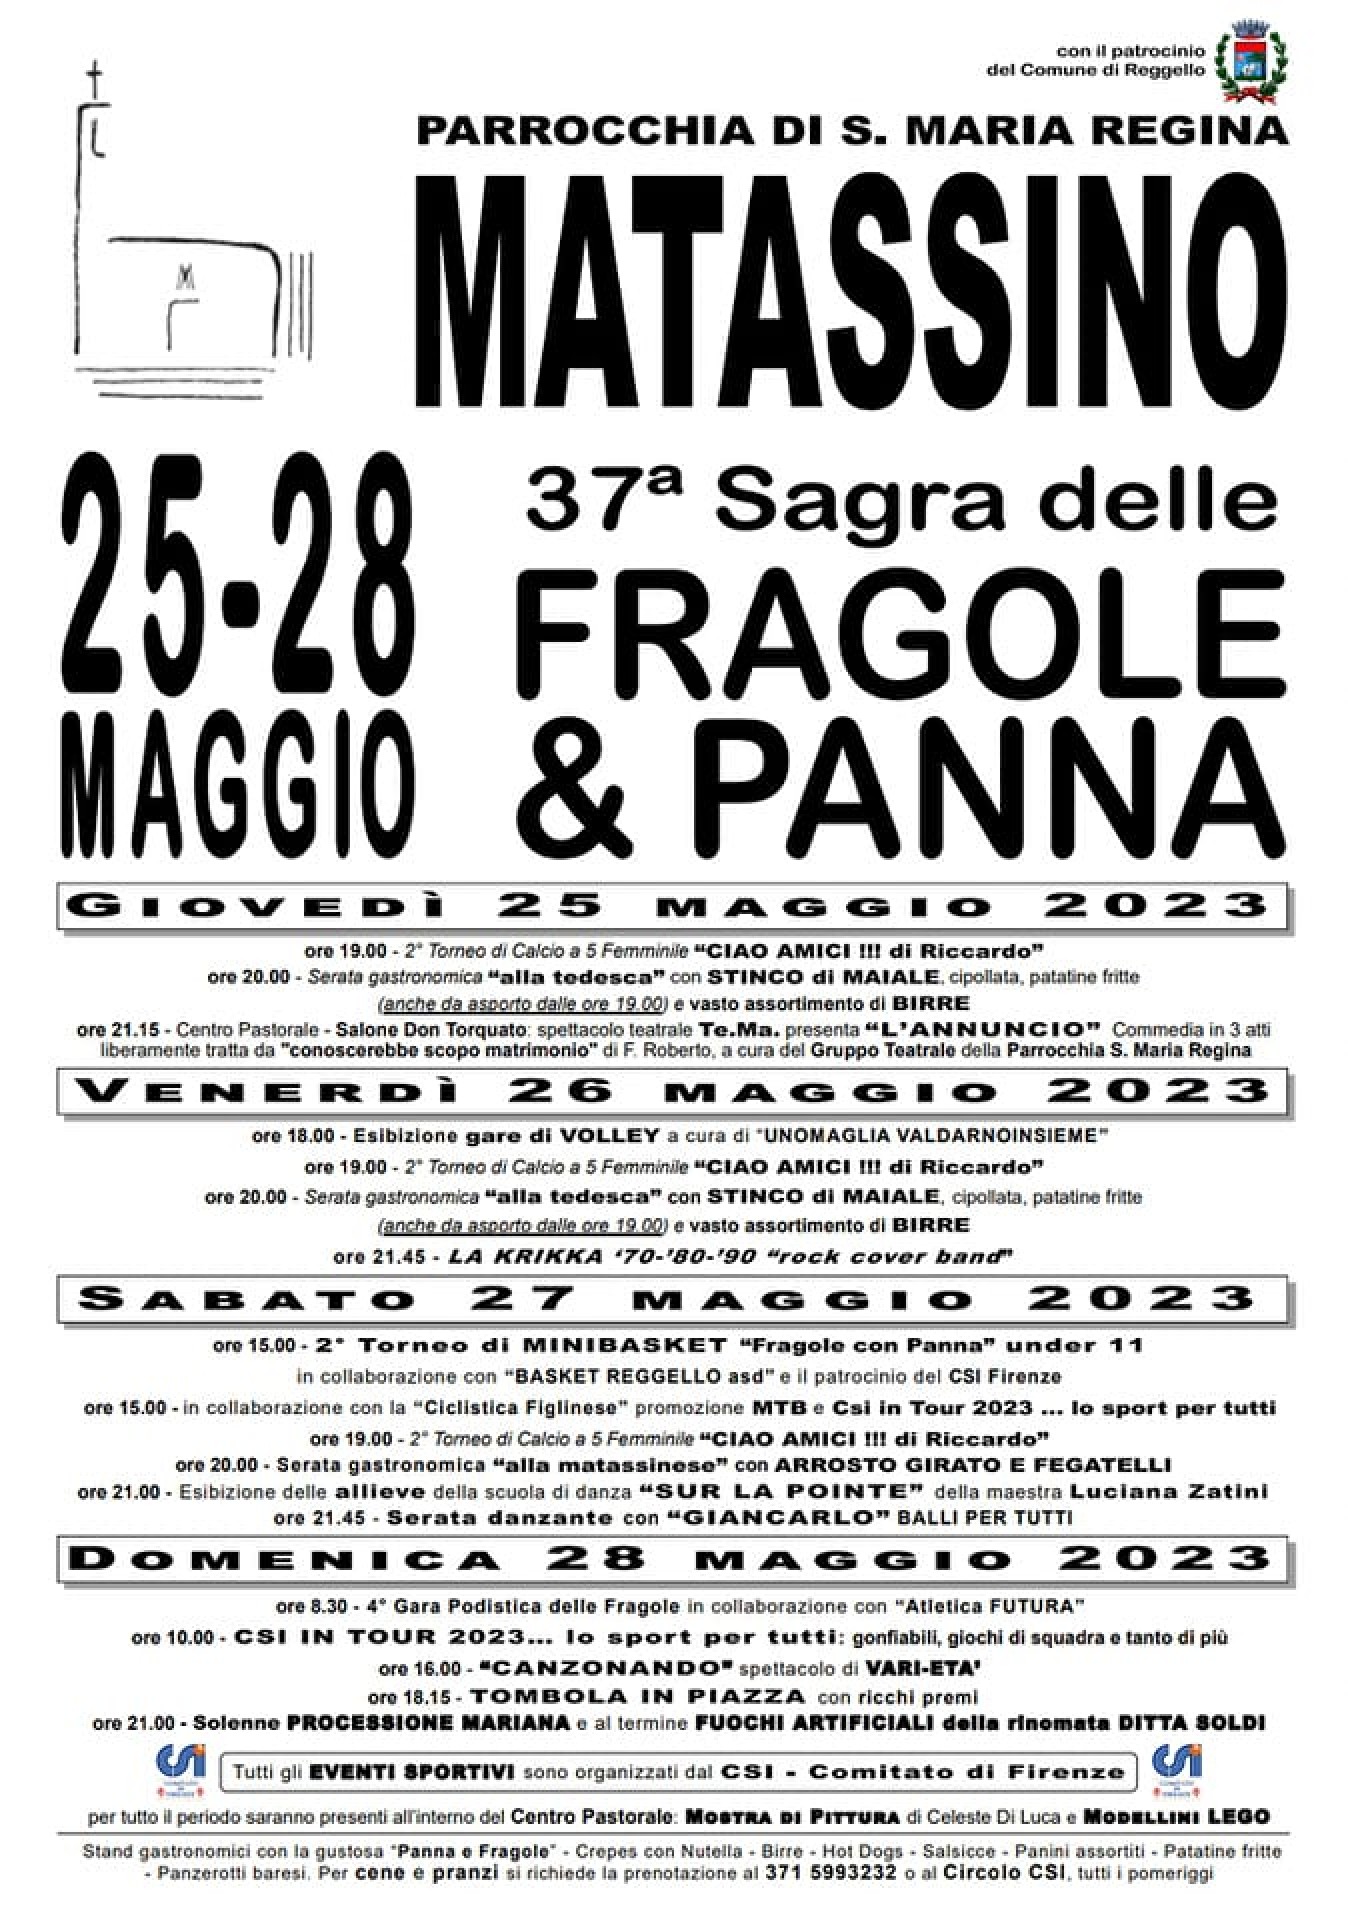 37° SAGRA DELLE FRAGOLE & PANNA a MATASSINO di FIGLINE E INCISA VALDARNO